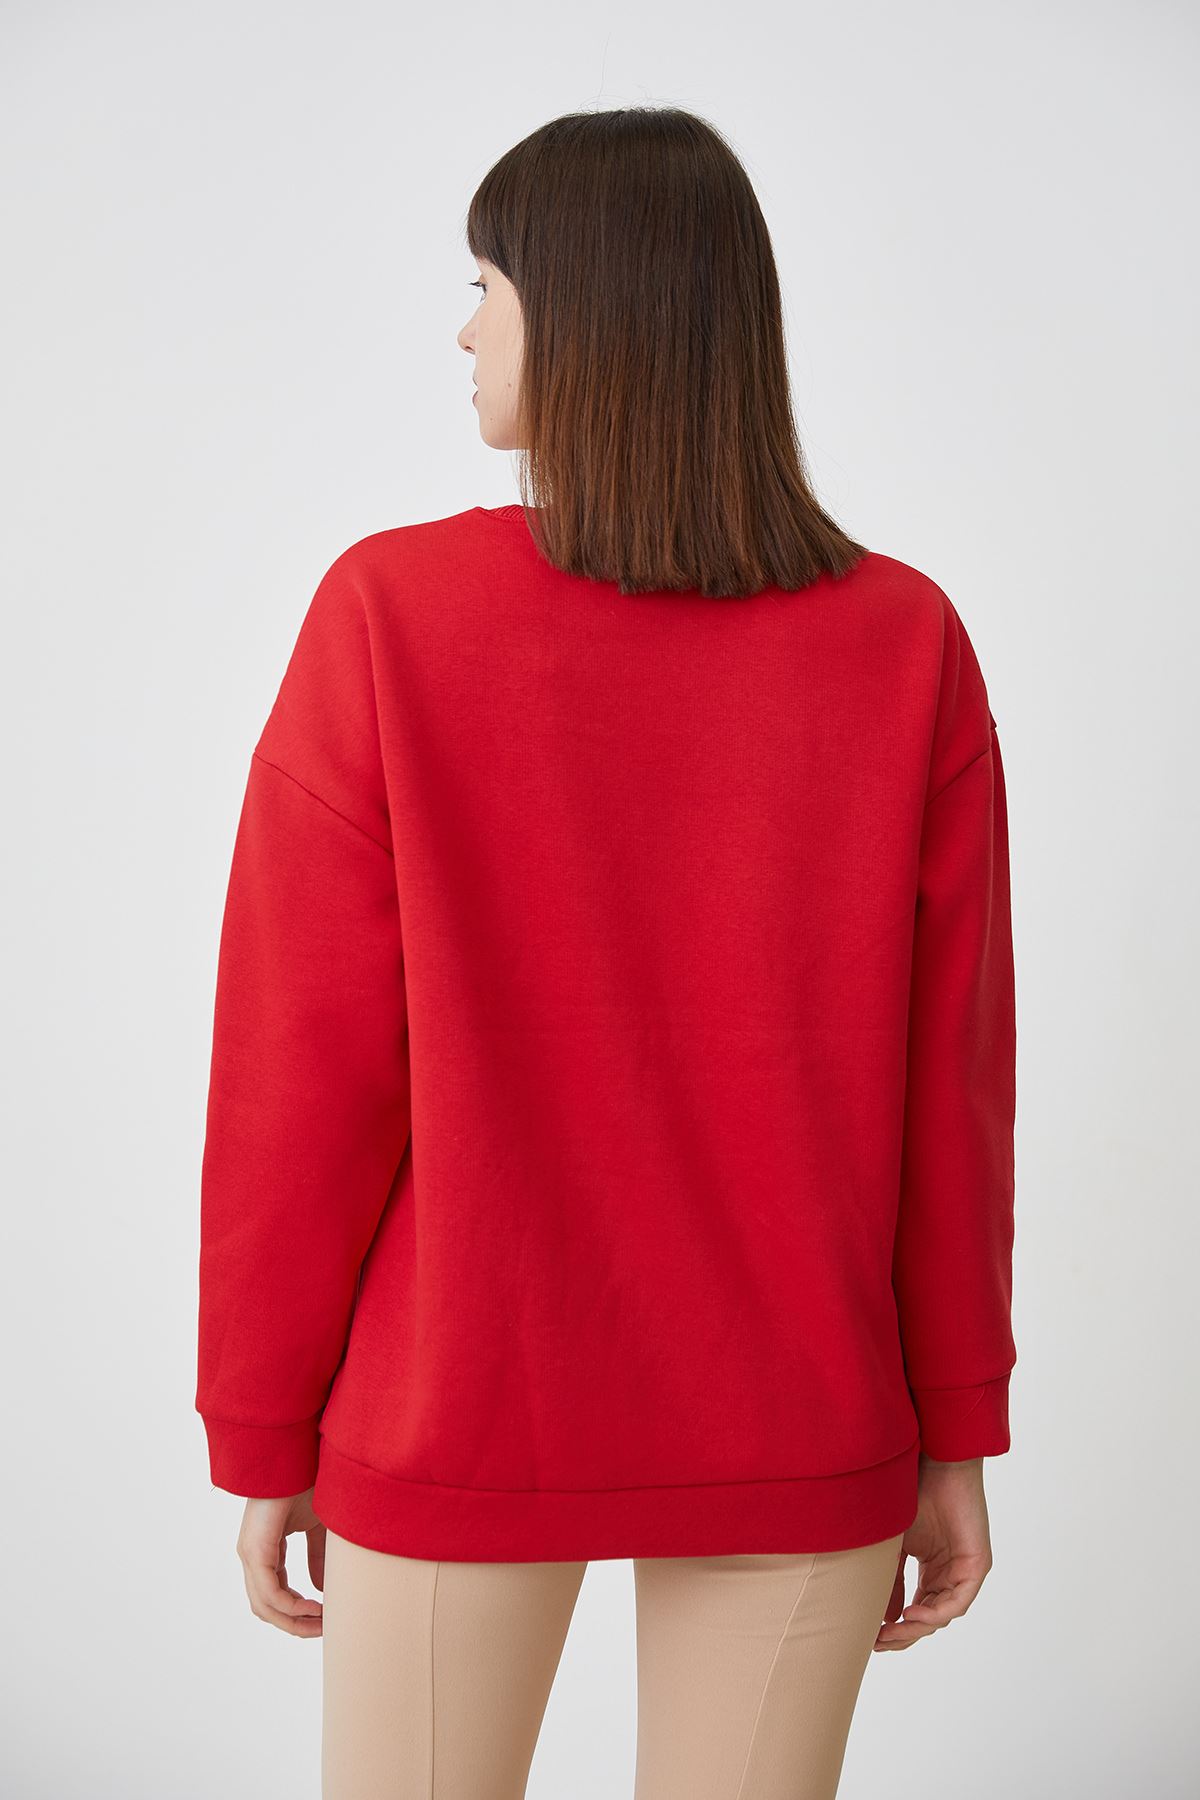 Baskılı Sweatshirt-Kırmızı